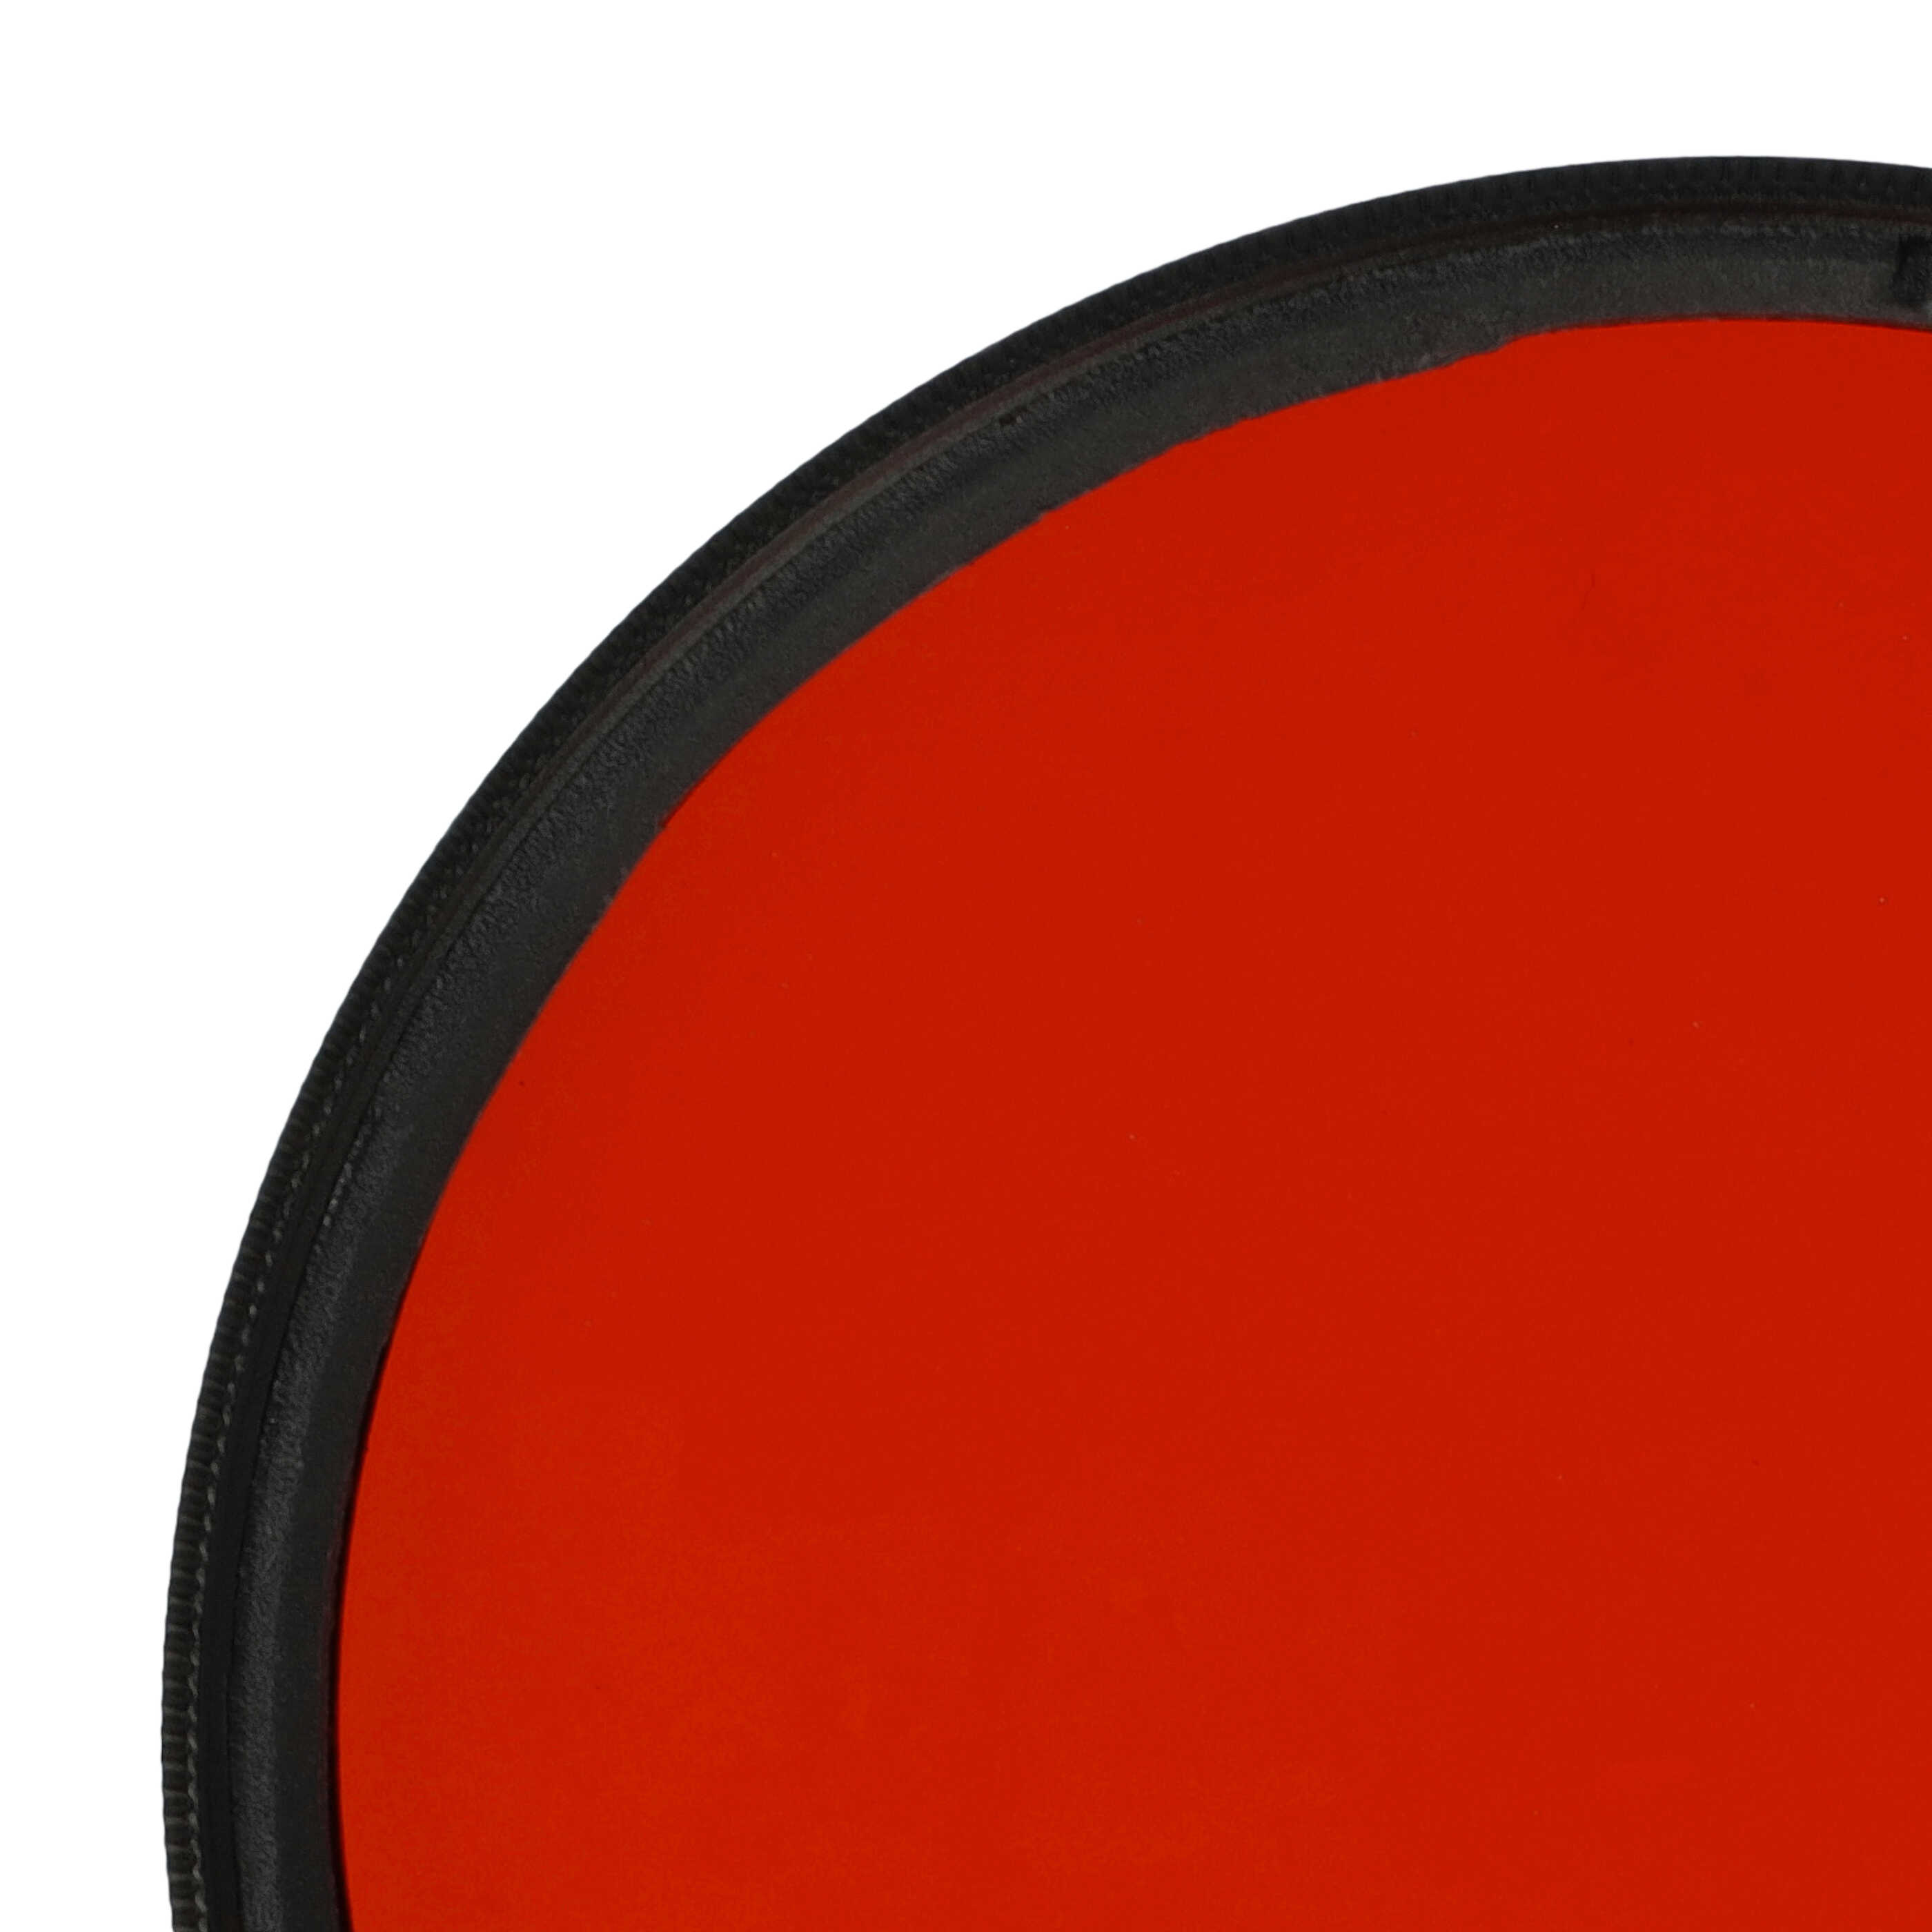 Filtro colorato per obiettivi fotocamera con filettatura da 67 mm - filtro arancione